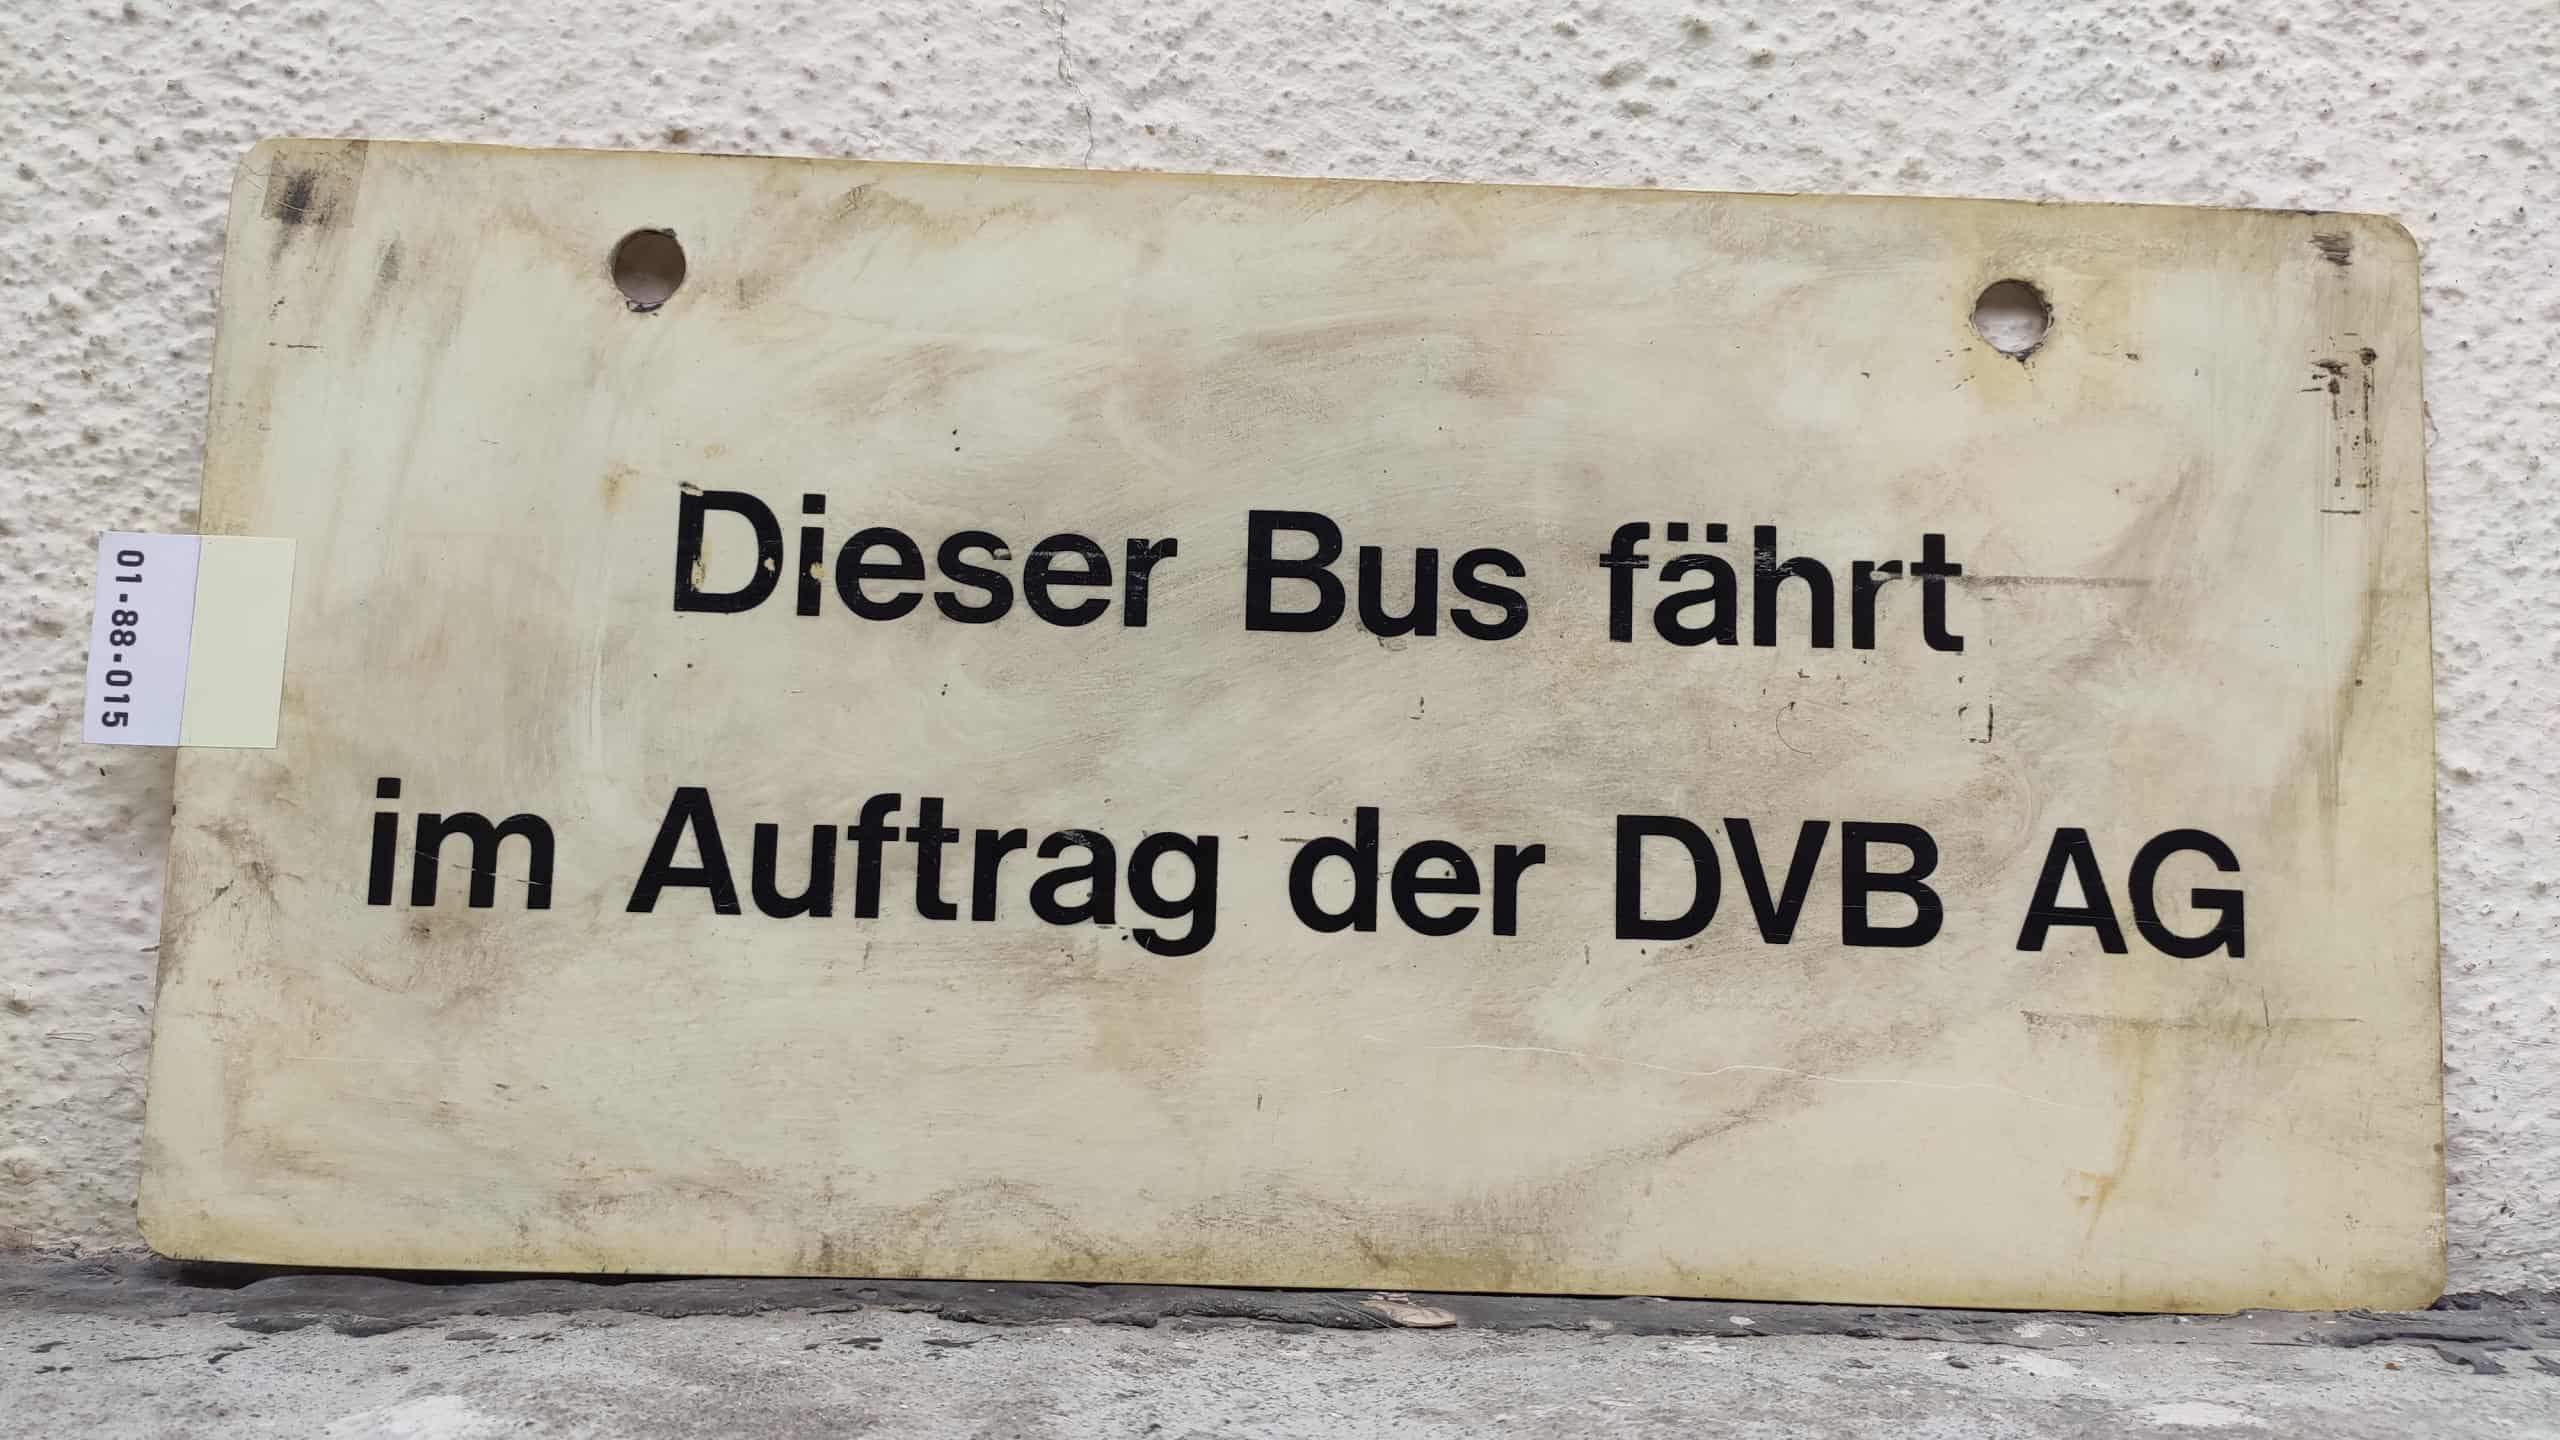 Dieser Bus fährt im Auftrag der DVB AG